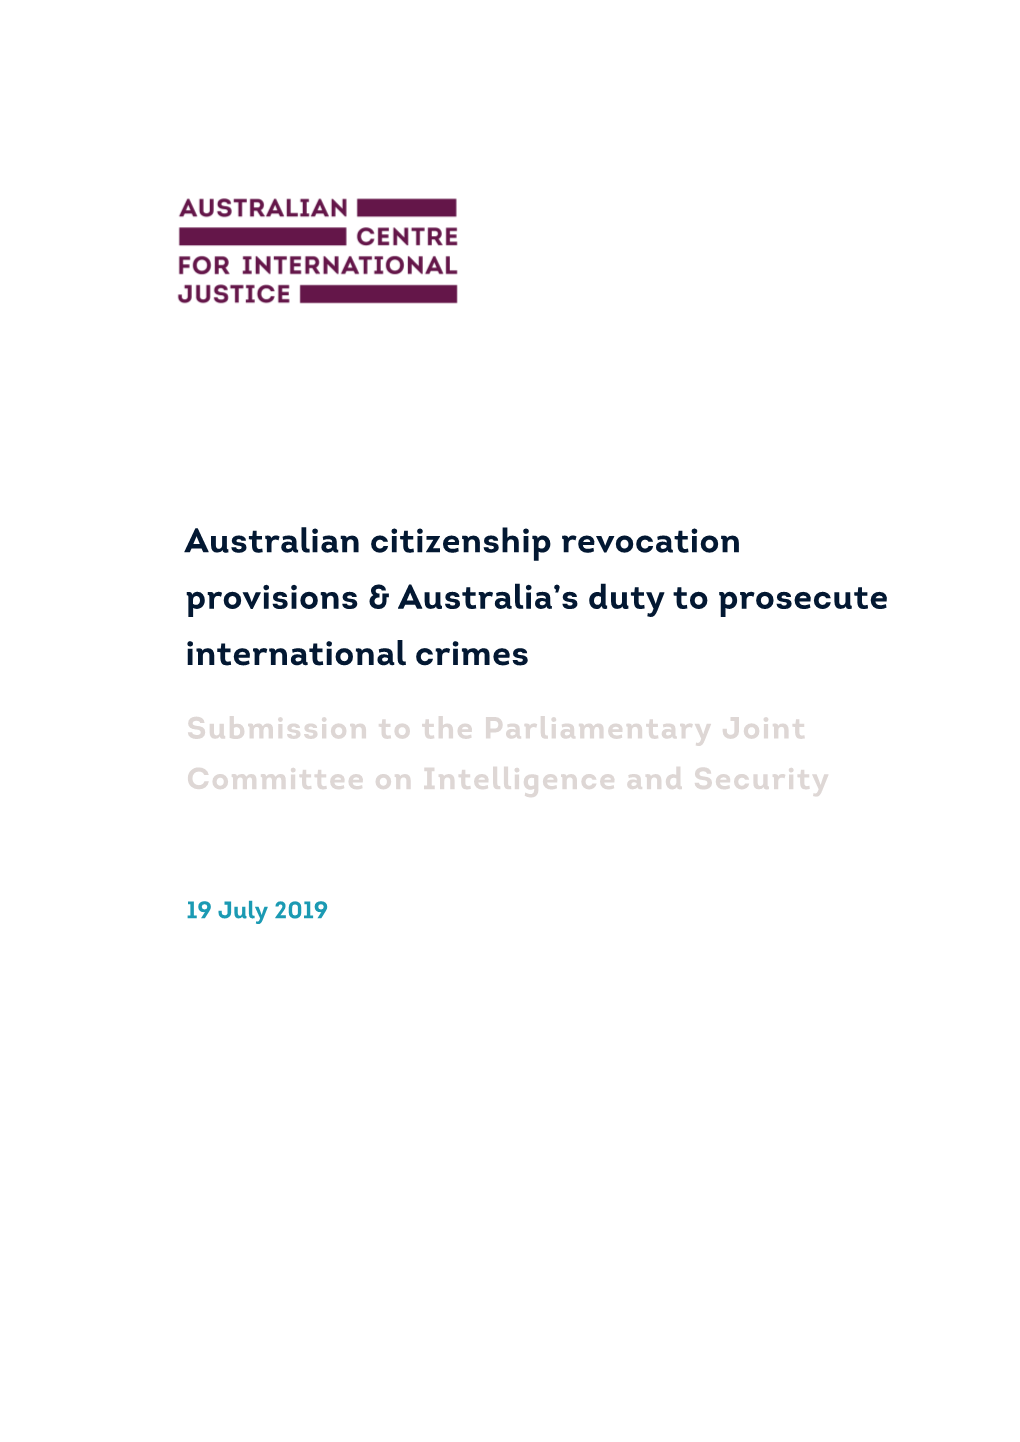 Australian Citizenship Revocation Provisions & Australia's Duty To